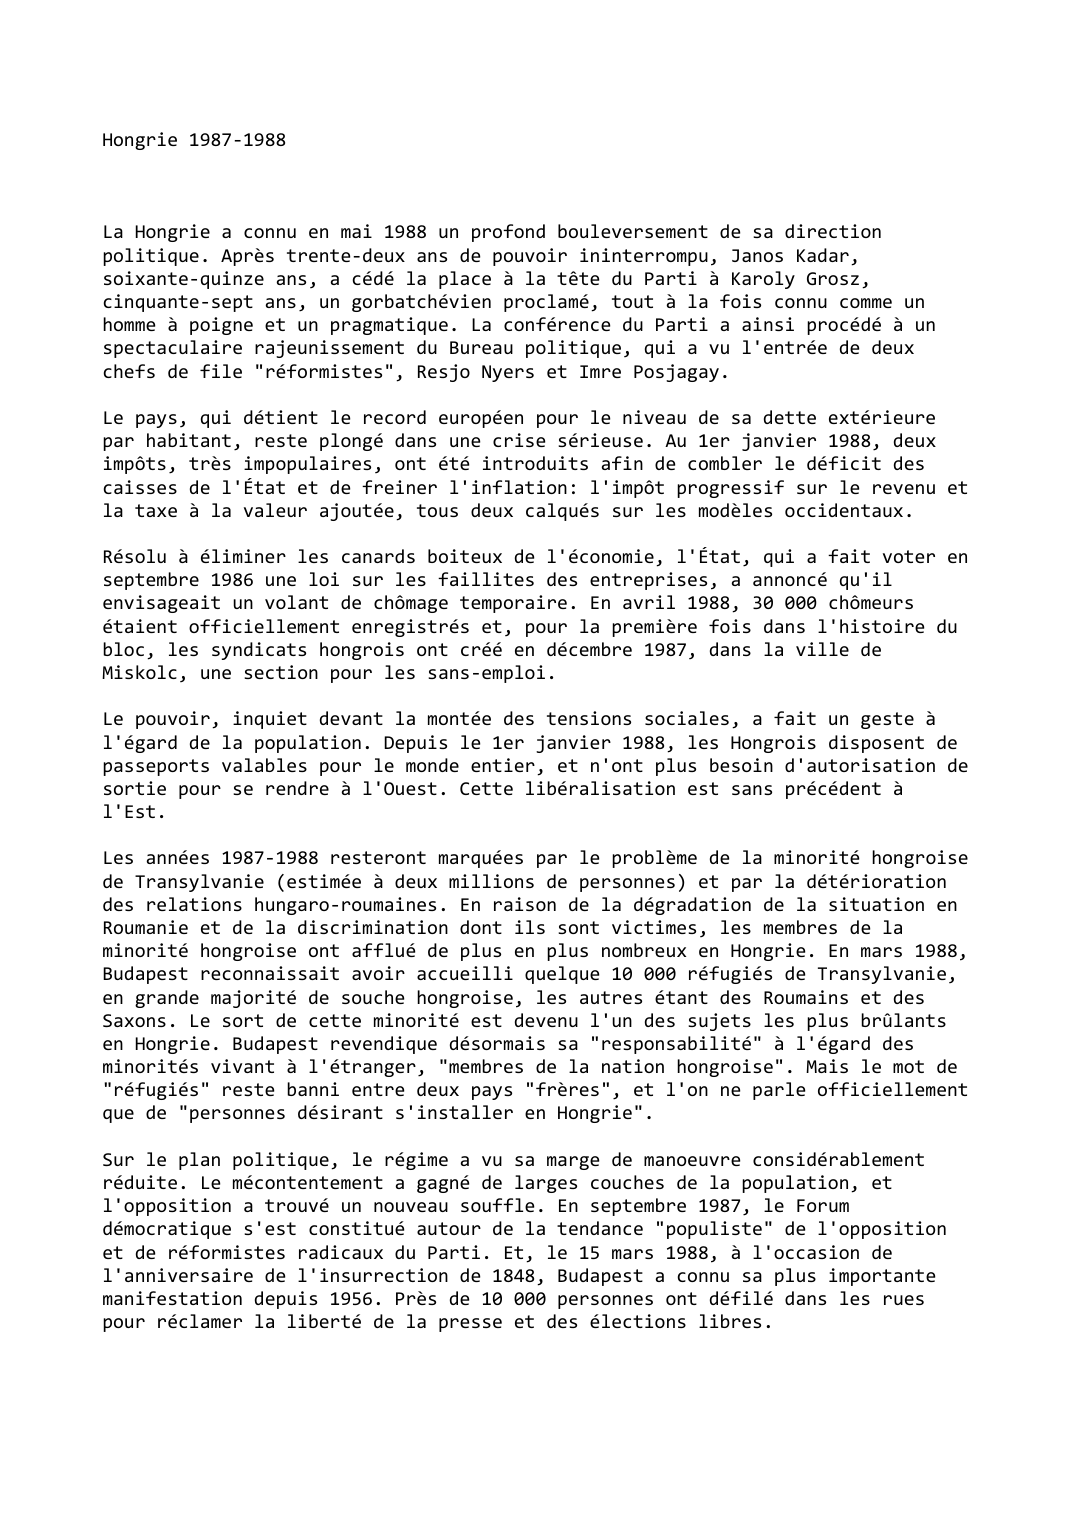 Prévisualisation du document Hongrie (1987-1988)